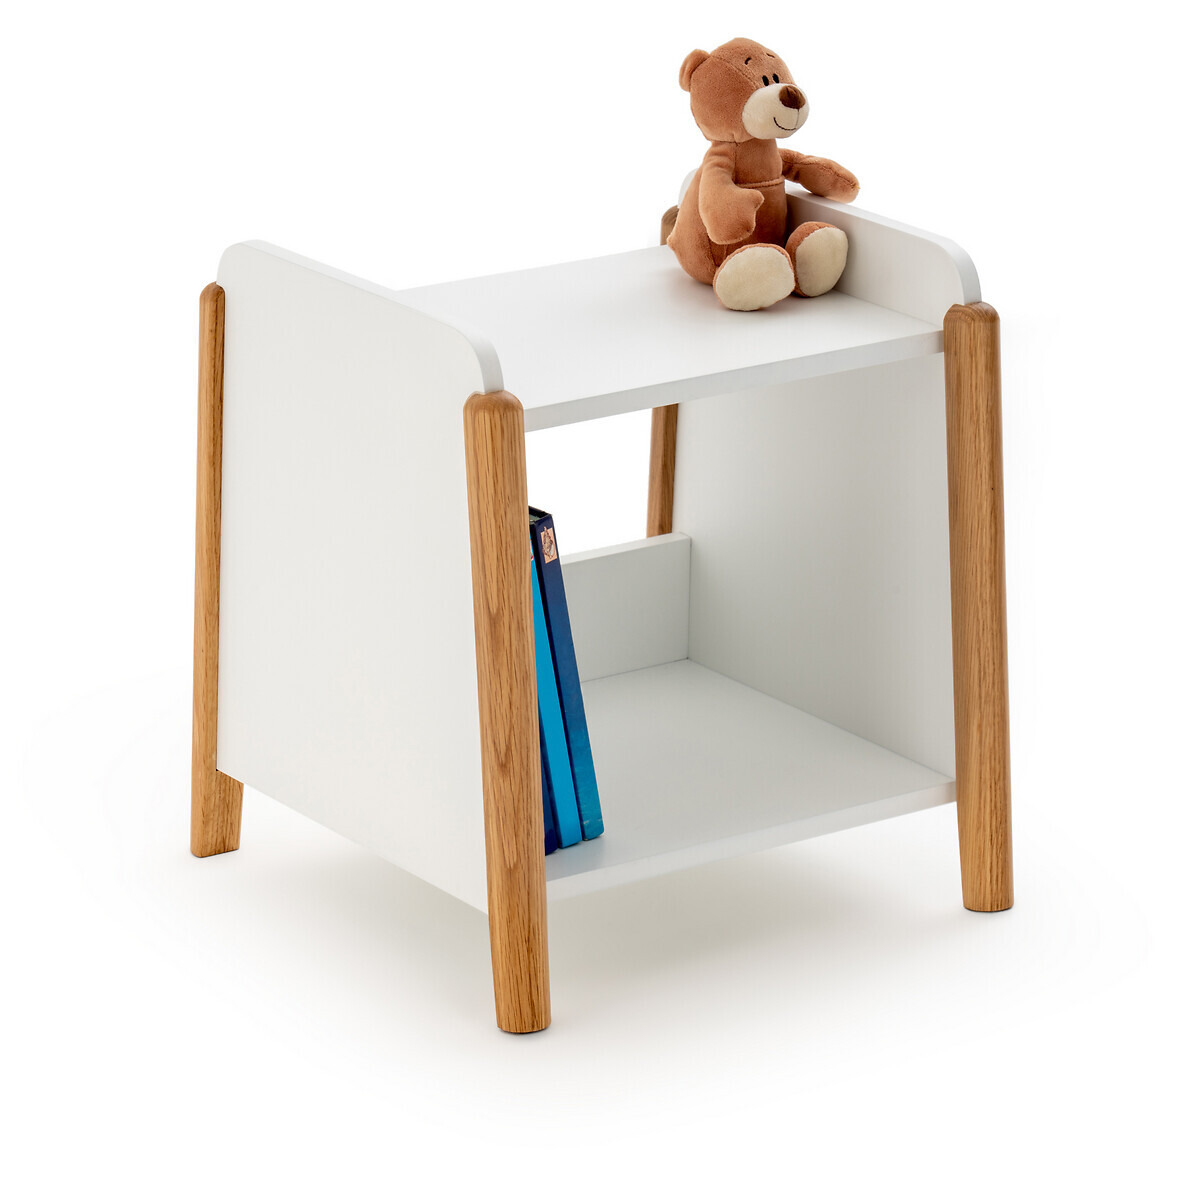 Nadil Child's Bedside Table - image 1